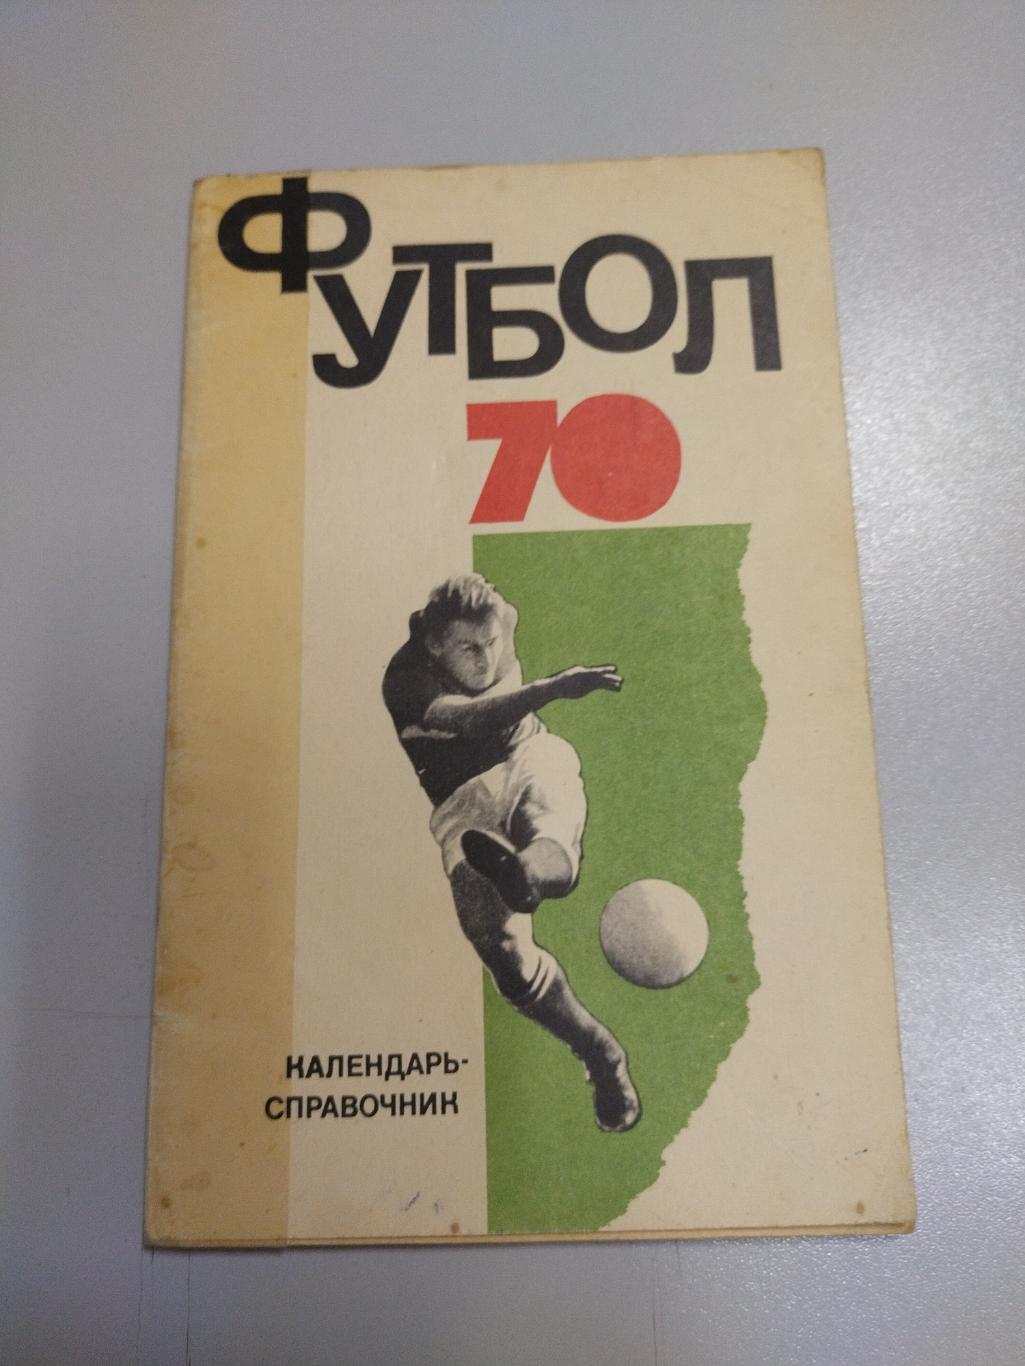 Календарь справочник футбол 1970